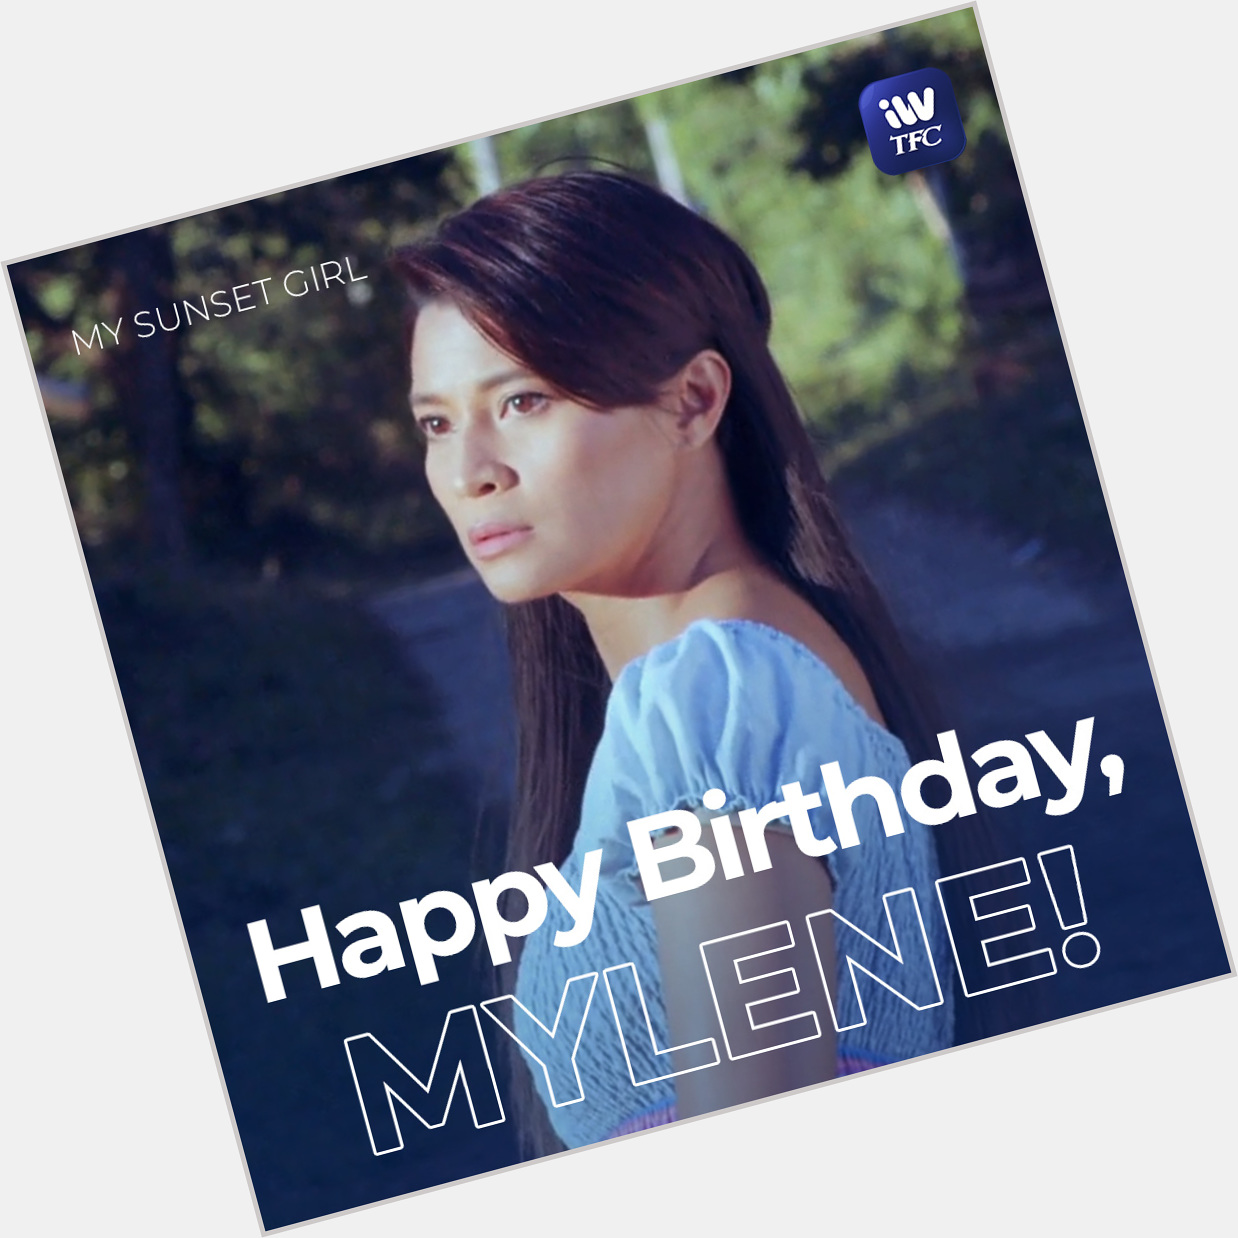 Happy birthday, Mylene Dizon!   